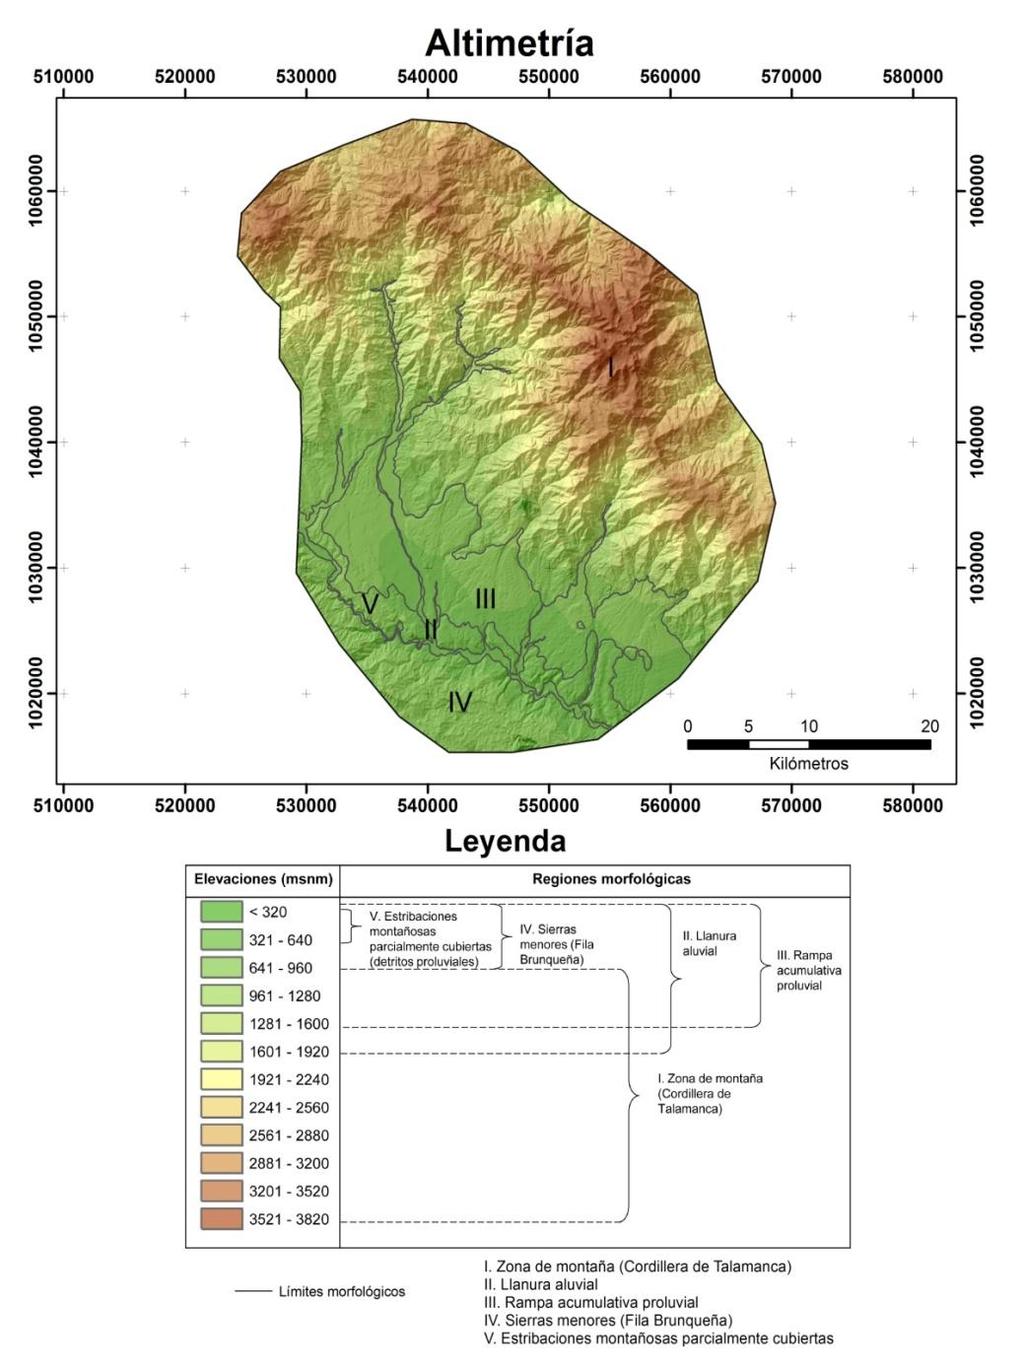 Mapa altimetrico: regiones morfológicas I. Zona de montaña (Cordillera de Talamanca): 960 3820 msnm II. Llanura aluvial: 320 1920 msnm III.